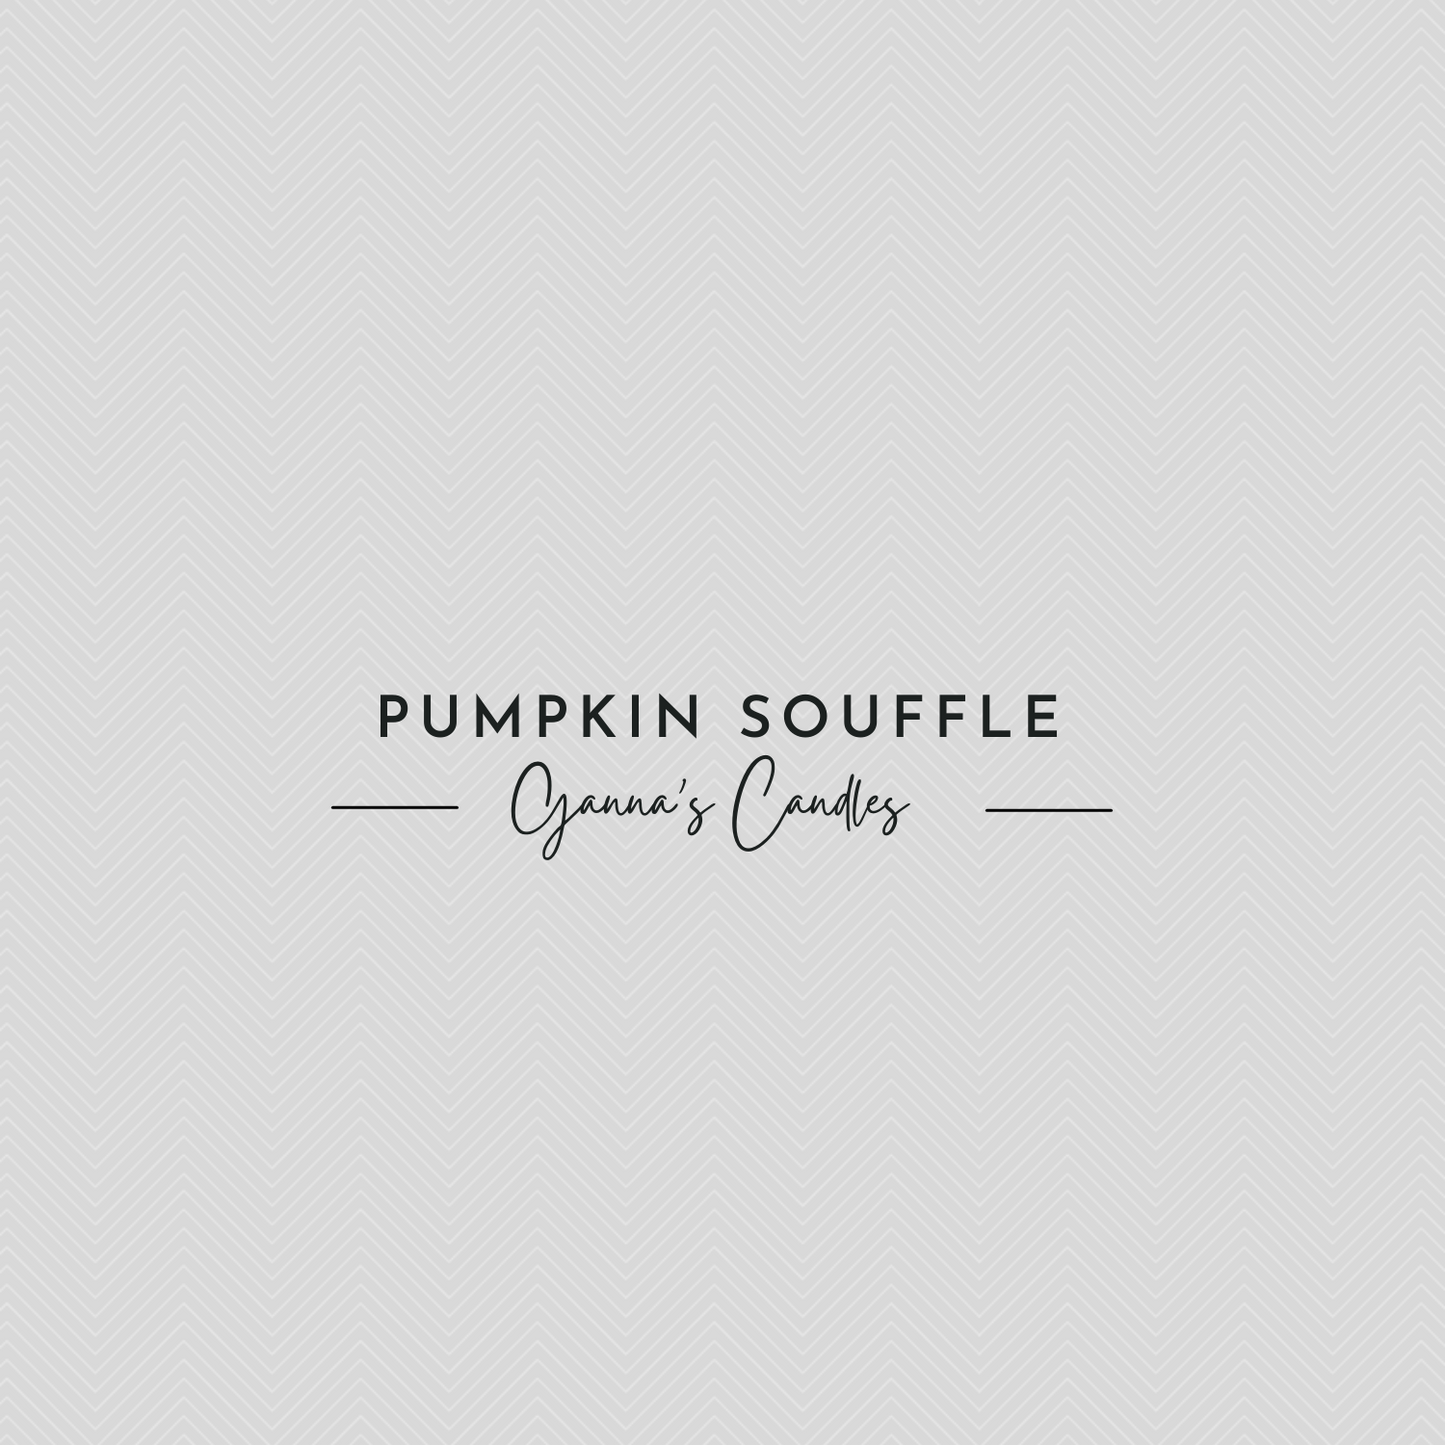 Pumpkin Soufflé